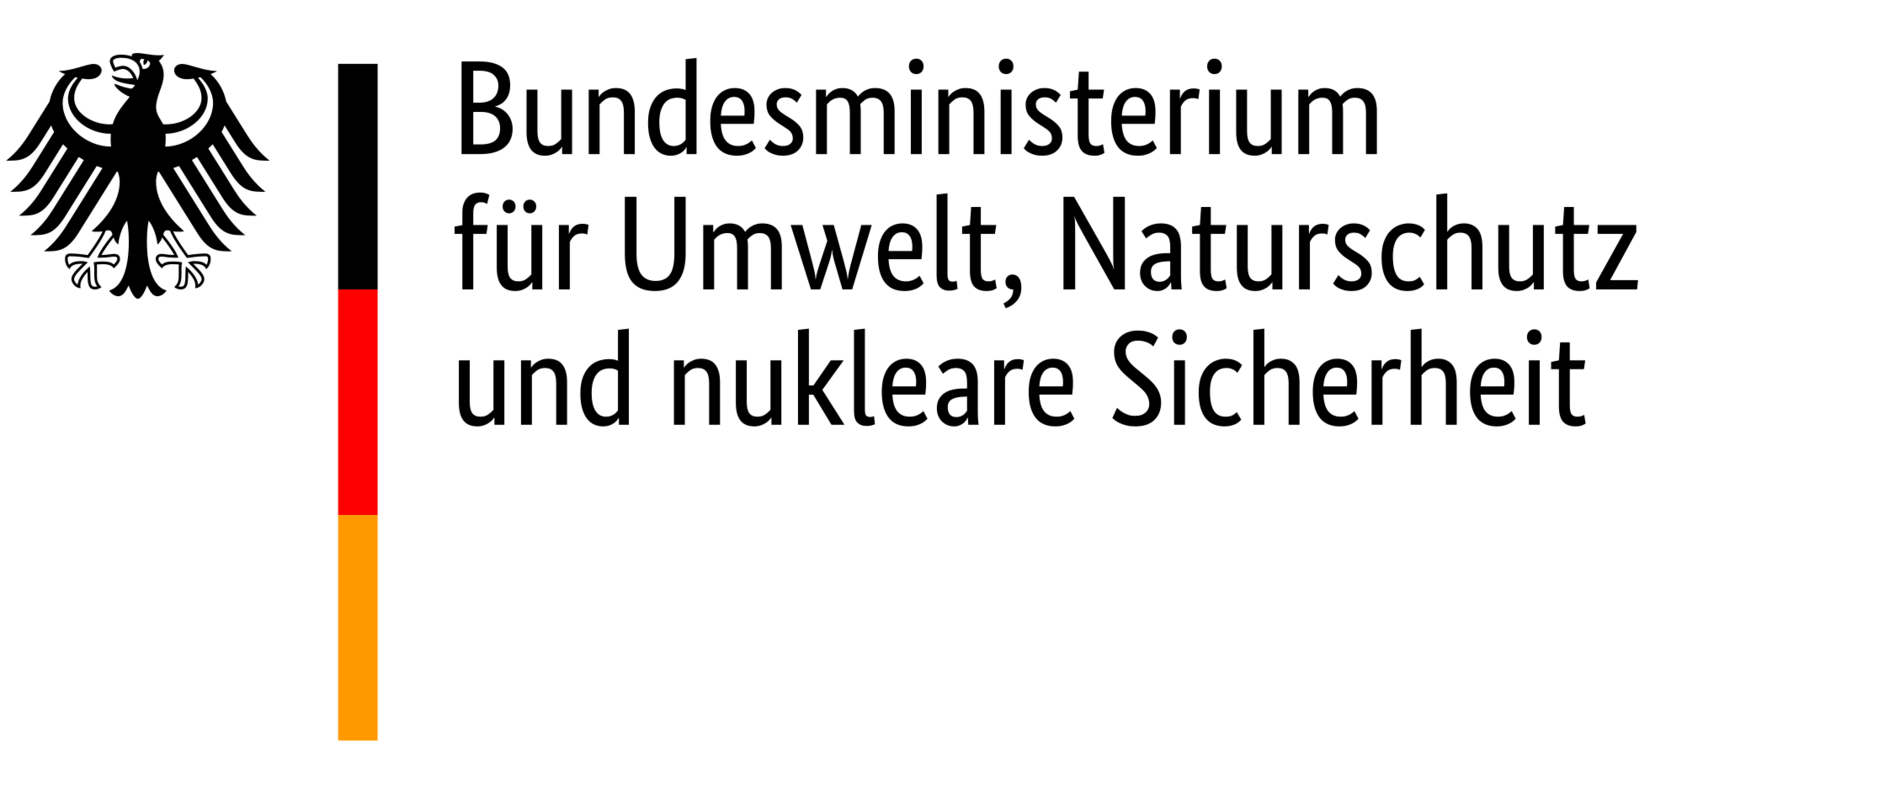 Logo des BMUV